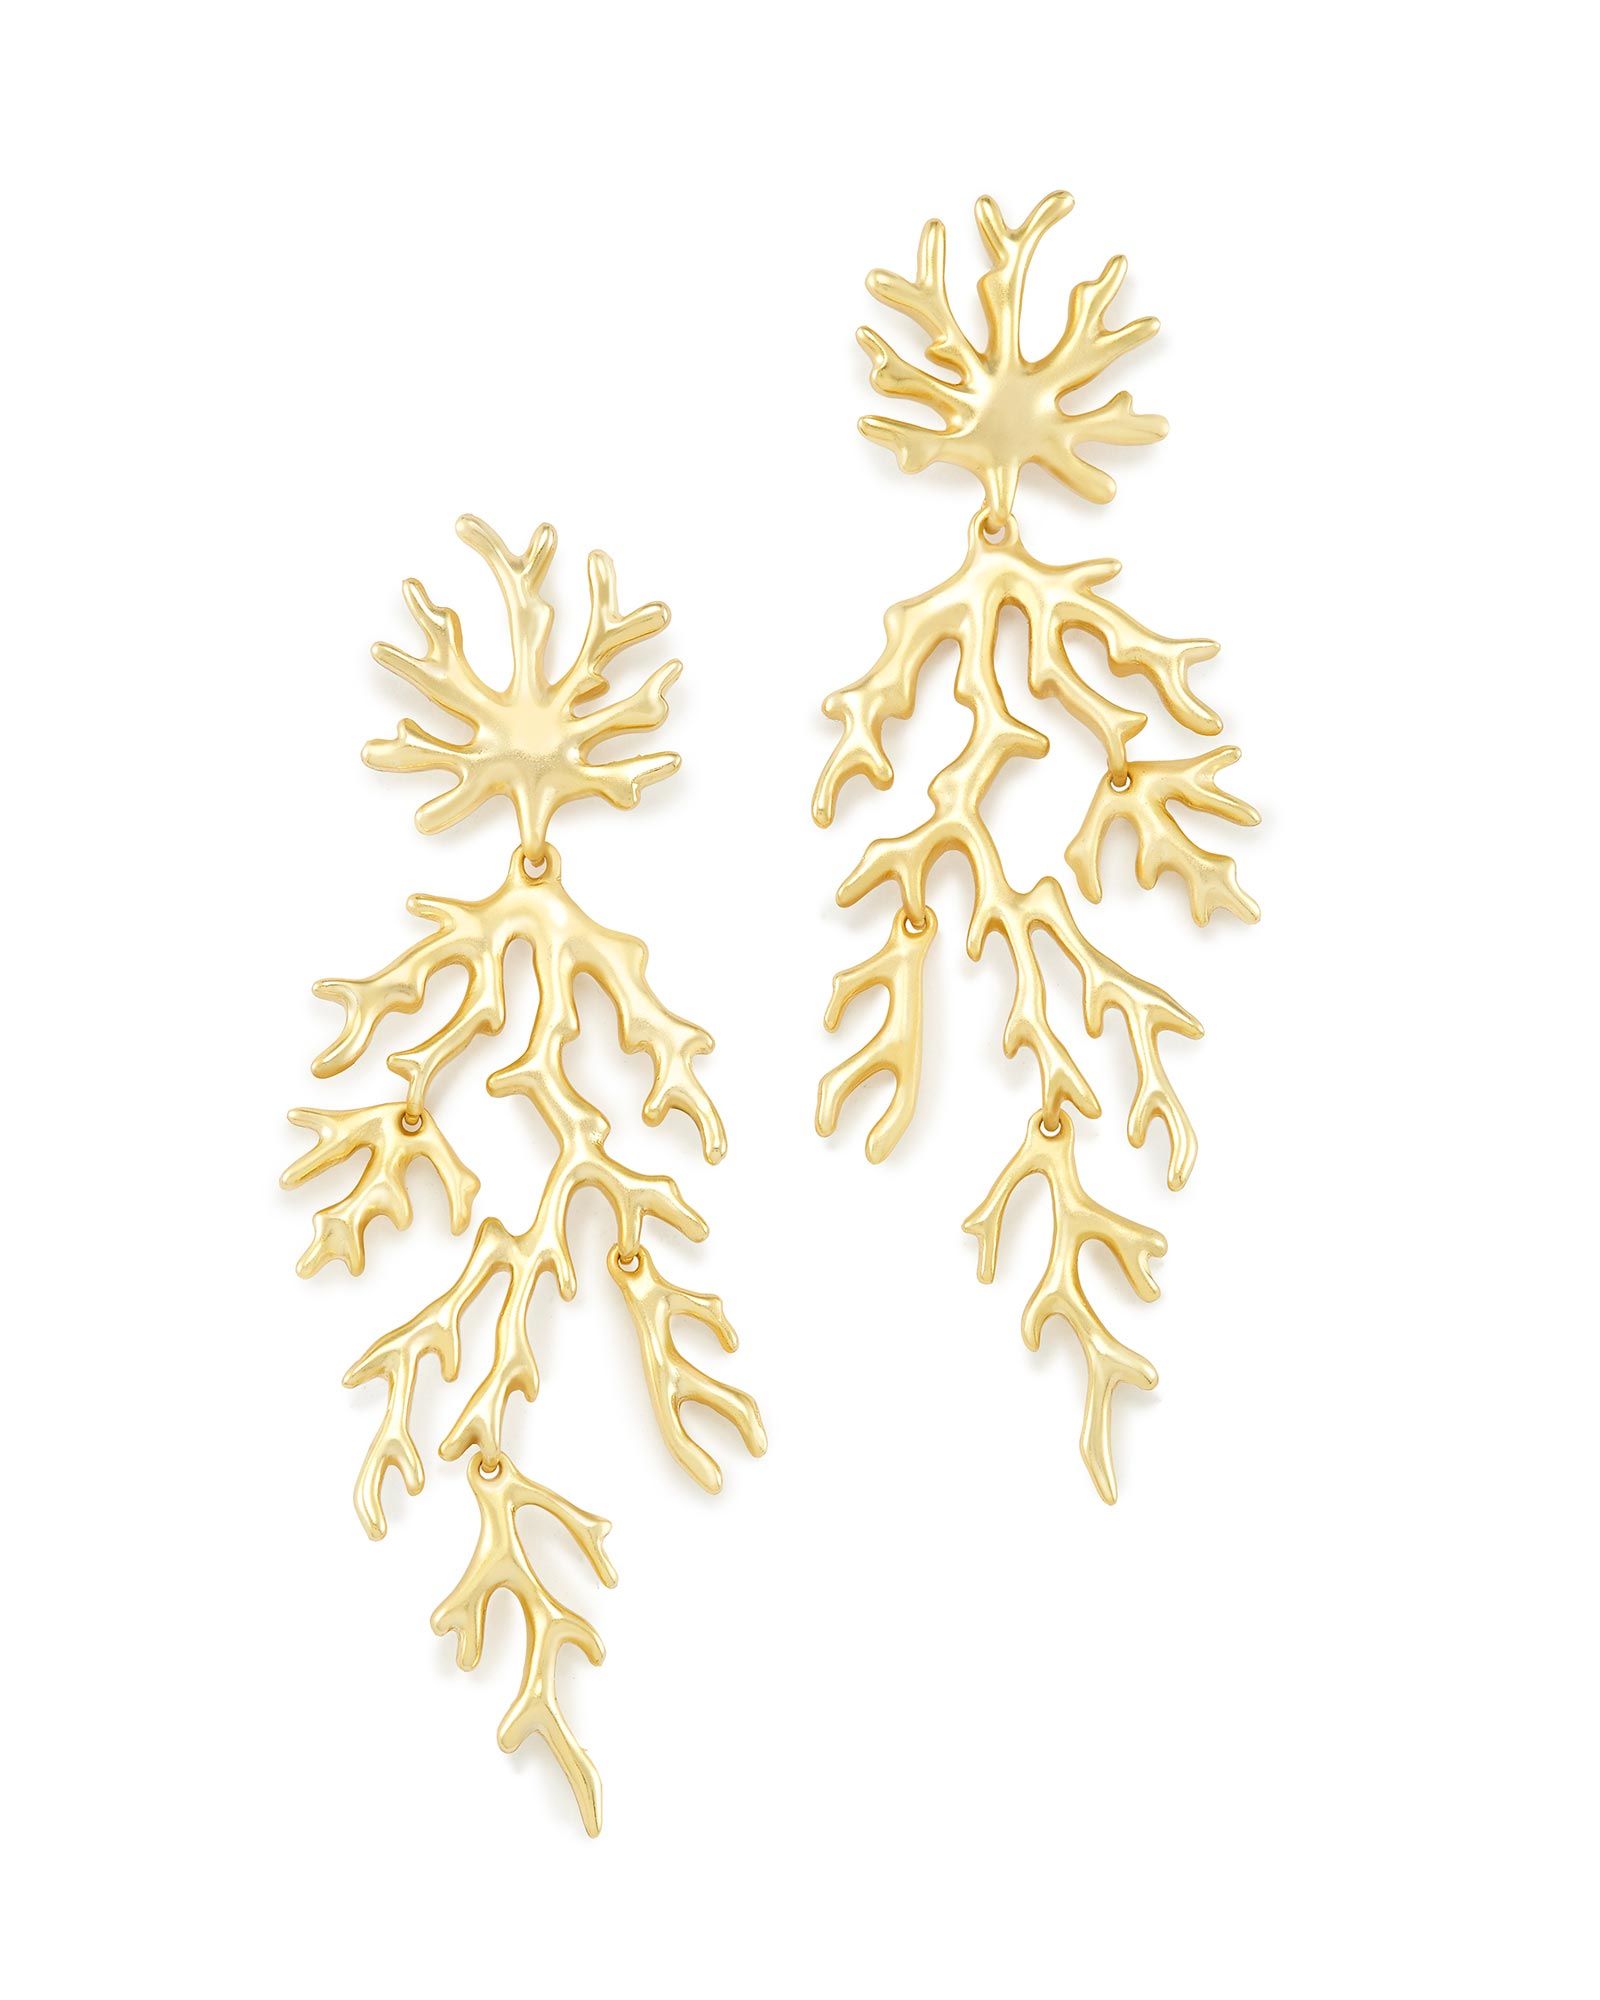 Aviana Statement Earrings in Gold | Kendra Scott